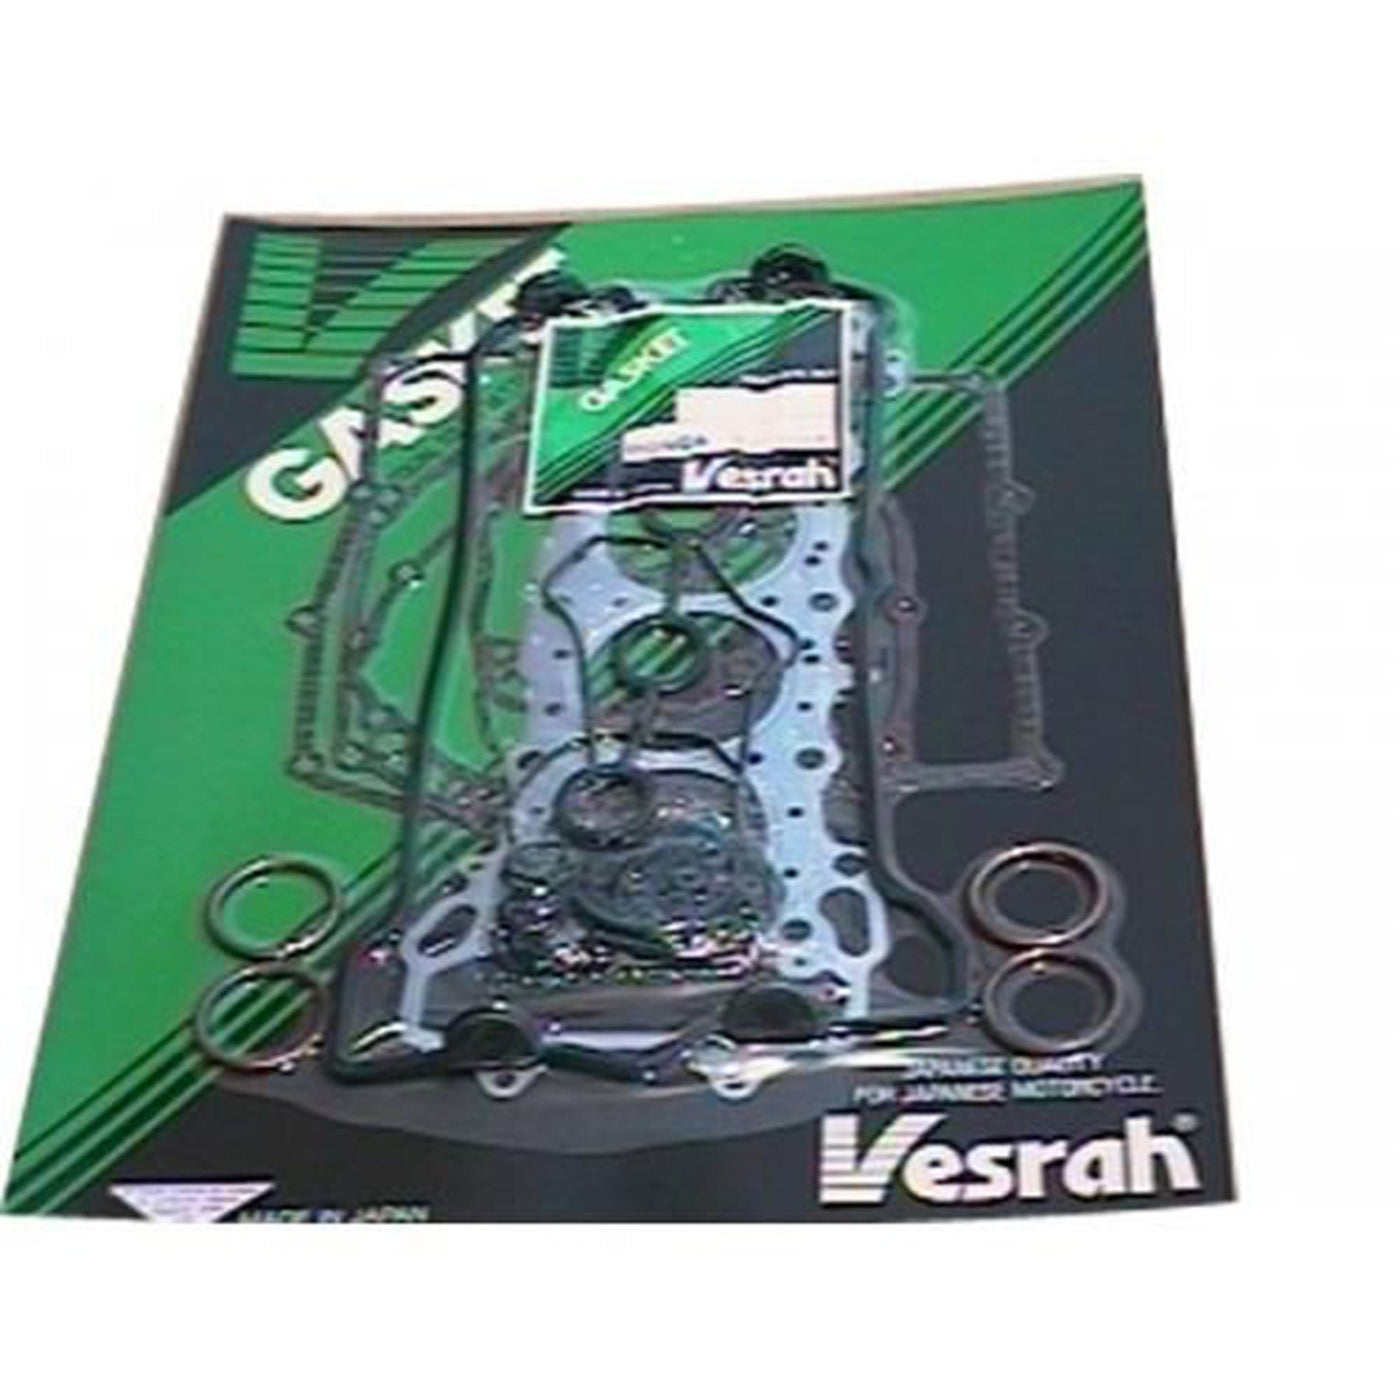 Vesrah VG-2059-M Engine Complete Gasket Set #VG-2059-M